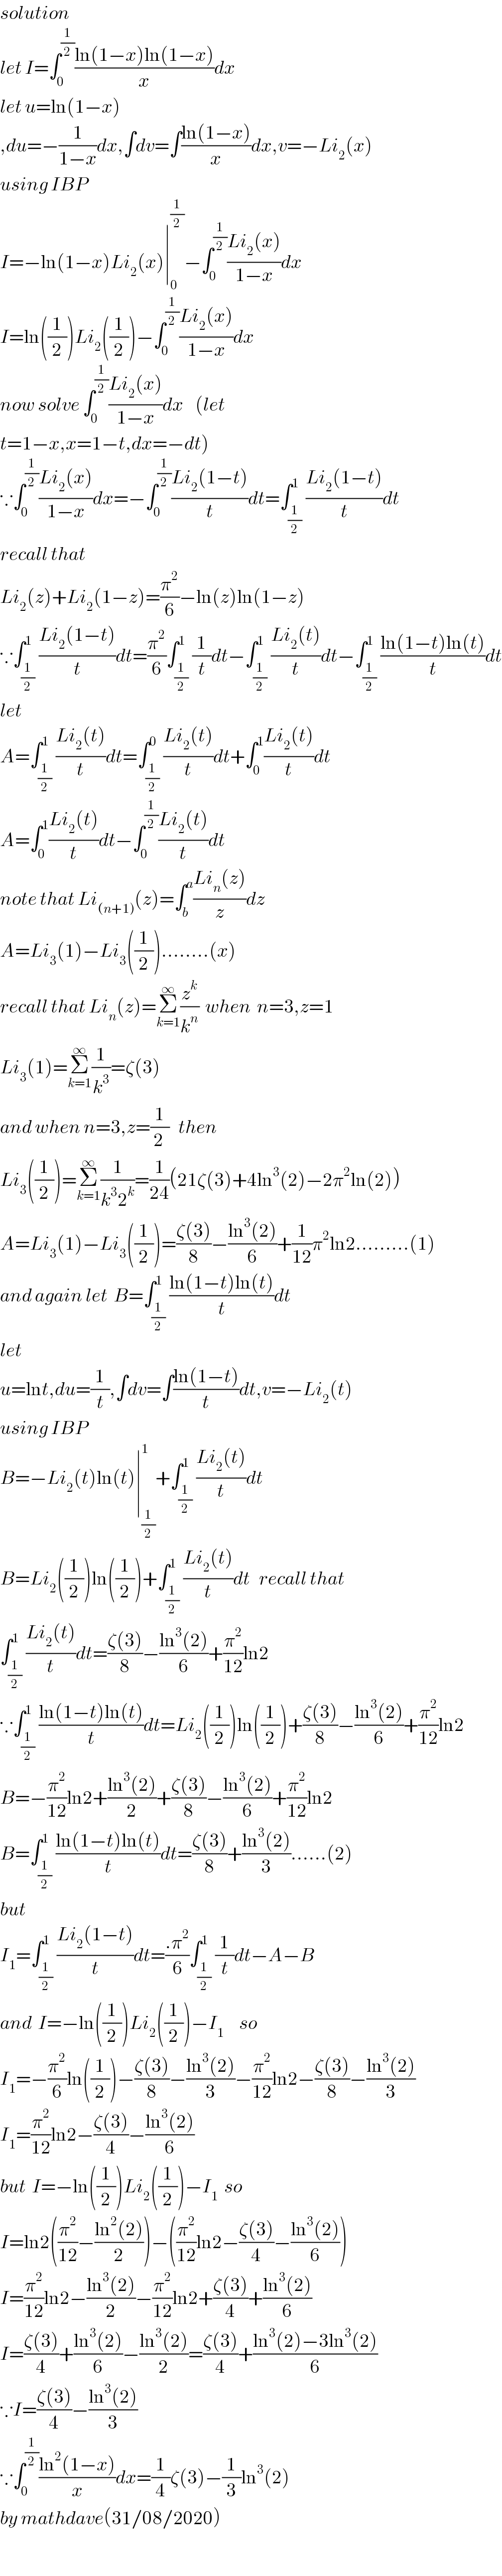 solution   let I=∫_0 ^(1/2) ((ln(1−x)ln(1−x))/x)dx  let u=ln(1−x)  ,du=−(1/(1−x))dx,∫dv=∫((ln(1−x))/x)dx,v=−Li_2 (x)  using IBP  I=−ln(1−x)Li_2 (x)∣_0 ^(1/2) −∫_0 ^(1/2) ((Li_2 (x))/(1−x))dx  I=ln((1/2))Li_2 ((1/2))−∫_0 ^(1/2) ((Li_2 (x))/(1−x))dx  now solve ∫_0 ^(1/2) ((Li_2 (x))/(1−x))dx    (let   t=1−x,x=1−t,dx=−dt)  ∵∫_0 ^(1/2) ((Li_2 (x))/(1−x))dx=−∫_0 ^(1/2) ((Li_2 (1−t))/t)dt=∫_(1/2) ^1 ((Li_2 (1−t))/t)dt  recall that  Li_2 (z)+Li_2 (1−z)=(π^2 /6)−ln(z)ln(1−z)  ∵∫_(1/2) ^1 ((Li_2 (1−t))/t)dt=(π^2 /6)∫_(1/2) ^1 (1/t)dt−∫_(1/2) ^1 ((Li_2 (t))/t)dt−∫_(1/2) ^1 ((ln(1−t)ln(t))/t)dt  let   A=∫_(1/2) ^1 ((Li_2 (t))/t)dt=∫_(1/2) ^0 ((Li_2 (t))/t)dt+∫_0 ^1 ((Li_2 (t))/t)dt  A=∫_0 ^1 ((Li_2 (t))/t)dt−∫_0 ^(1/2) ((Li_2 (t))/t)dt  note that Li_((n+1)) (z)=∫_b ^a ((Li_n (z))/z)dz  A=Li_3 (1)−Li_3 ((1/2))........(x)  recall that Li_n (z)=Σ_(k=1) ^∞ (z^k /k^n )  when  n=3,z=1  Li_3 (1)=Σ_(k=1) ^∞ (1/k^3 )=ζ(3)  and when n=3,z=(1/(2 ))   then  Li_3 ((1/2))=Σ_(k=1) ^∞ (1/(k^3 2^k ))=(1/(24))(21ζ(3)+4ln^3 (2)−2π^2 ln(2))  A=Li_3 (1)−Li_3 ((1/2))=((ζ(3))/8)−((ln^3 (2))/6)+(1/(12))π^2 ln2.........(1)    and again let  B=∫_(1/2) ^1 ((ln(1−t)ln(t))/t)dt  let  u=lnt,du=(1/t),∫dv=∫((ln(1−t))/t)dt,v=−Li_2 (t)  using IBP  B=−Li_2 (t)ln(t)∣_(1/2) ^1 +∫_(1/2) ^1 ((Li_2 (t))/t)dt  B=Li_2 ((1/2))ln((1/2))+∫_(1/2) ^1 ((Li_2 (t))/t)dt   recall that  ∫_(1/2) ^1 ((Li_2 (t))/t)dt=((ζ(3))/8)−((ln^3 (2))/6)+(π^2 /(12))ln2  ∵∫_(1/2) ^1 ((ln(1−t)ln(t))/t)dt=Li_2 ((1/2))ln((1/2))+((ζ(3))/8)−((ln^3 (2))/6)+(π^2 /(12))ln2  B=−(π^2 /(12))ln2+((ln^3 (2))/2)+((ζ(3))/8)−((ln^3 (2))/6)+(π^2 /(12))ln2  B=∫_(1/2) ^1 ((ln(1−t)ln(t))/t)dt=((ζ(3))/8)+((ln^3 (2))/3)......(2)  but  I_1 =∫_(1/2) ^1 ((Li_2 (1−t))/t)dt=((.π^2 )/6)∫_(1/2) ^1 (1/t)dt−A−B  and  I=−ln((1/2))Li_2 ((1/2))−I_1      so  I_1 =−(π^2 /6)ln((1/2))−((ζ(3))/8)−((ln^3 (2))/3)−(π^2 /(12))ln2−((ζ(3))/8)−((ln^3 (2))/3)  I_1 =(π^2 /(12))ln2−((ζ(3))/4)−((ln^3 (2))/6)  but  I=−ln((1/2))Li_2 ((1/2))−I_1   so  I=ln2((π^2 /(12))−((ln^2 (2))/2))−((π^2 /(12))ln2−((ζ(3))/4)−((ln^3 (2))/6))  I=(π^2 /(12))ln2−((ln^3 (2))/2)−(π^2 /(12))ln2+((ζ(3))/4)+((ln^3 (2))/6)  I=((ζ(3))/4)+((ln^3 (2))/6)−((ln^3 (2))/2)=((ζ(3))/4)+((ln^3 (2)−3ln^3 (2))/6)  ∵I=((ζ(3))/4)−((ln^3 (2))/3)  ∵∫_0 ^(1/2) ((ln^2 (1−x))/x)dx=(1/4)ζ(3)−(1/3)ln^3 (2)  by mathdave(31/08/2020)  